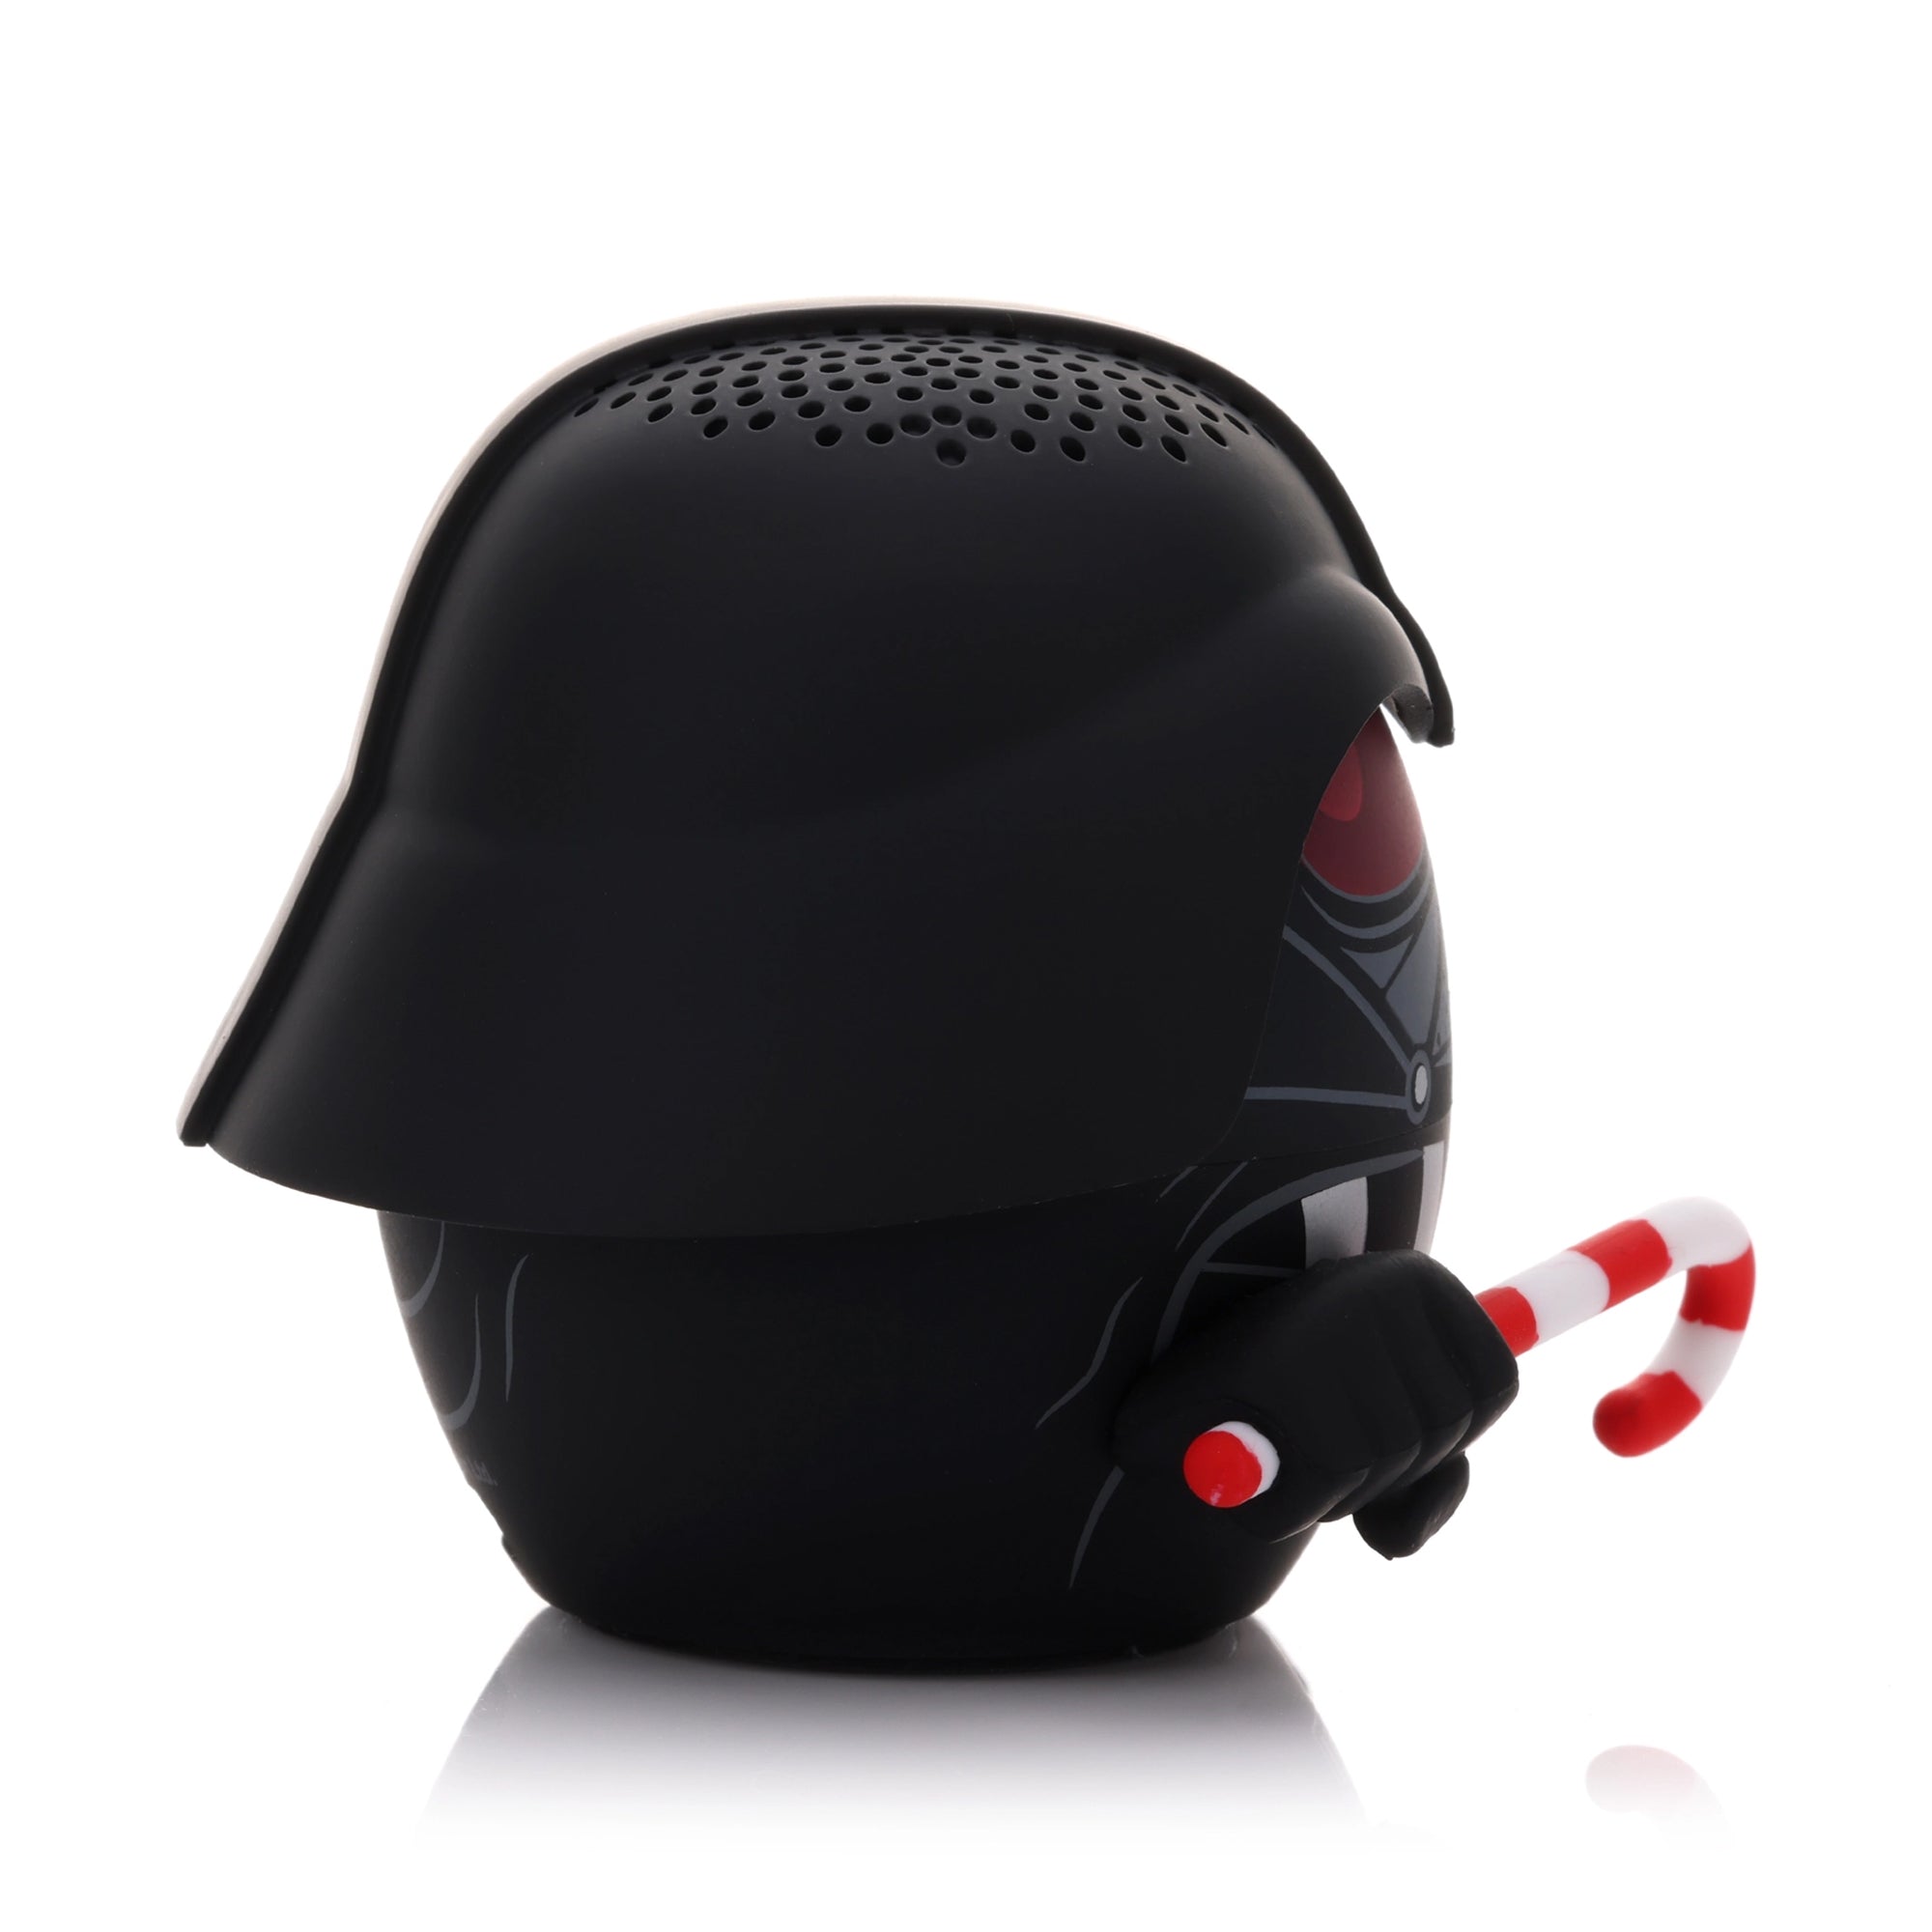 Star Wars Christmas Darth Vader Bluetooth Speaker